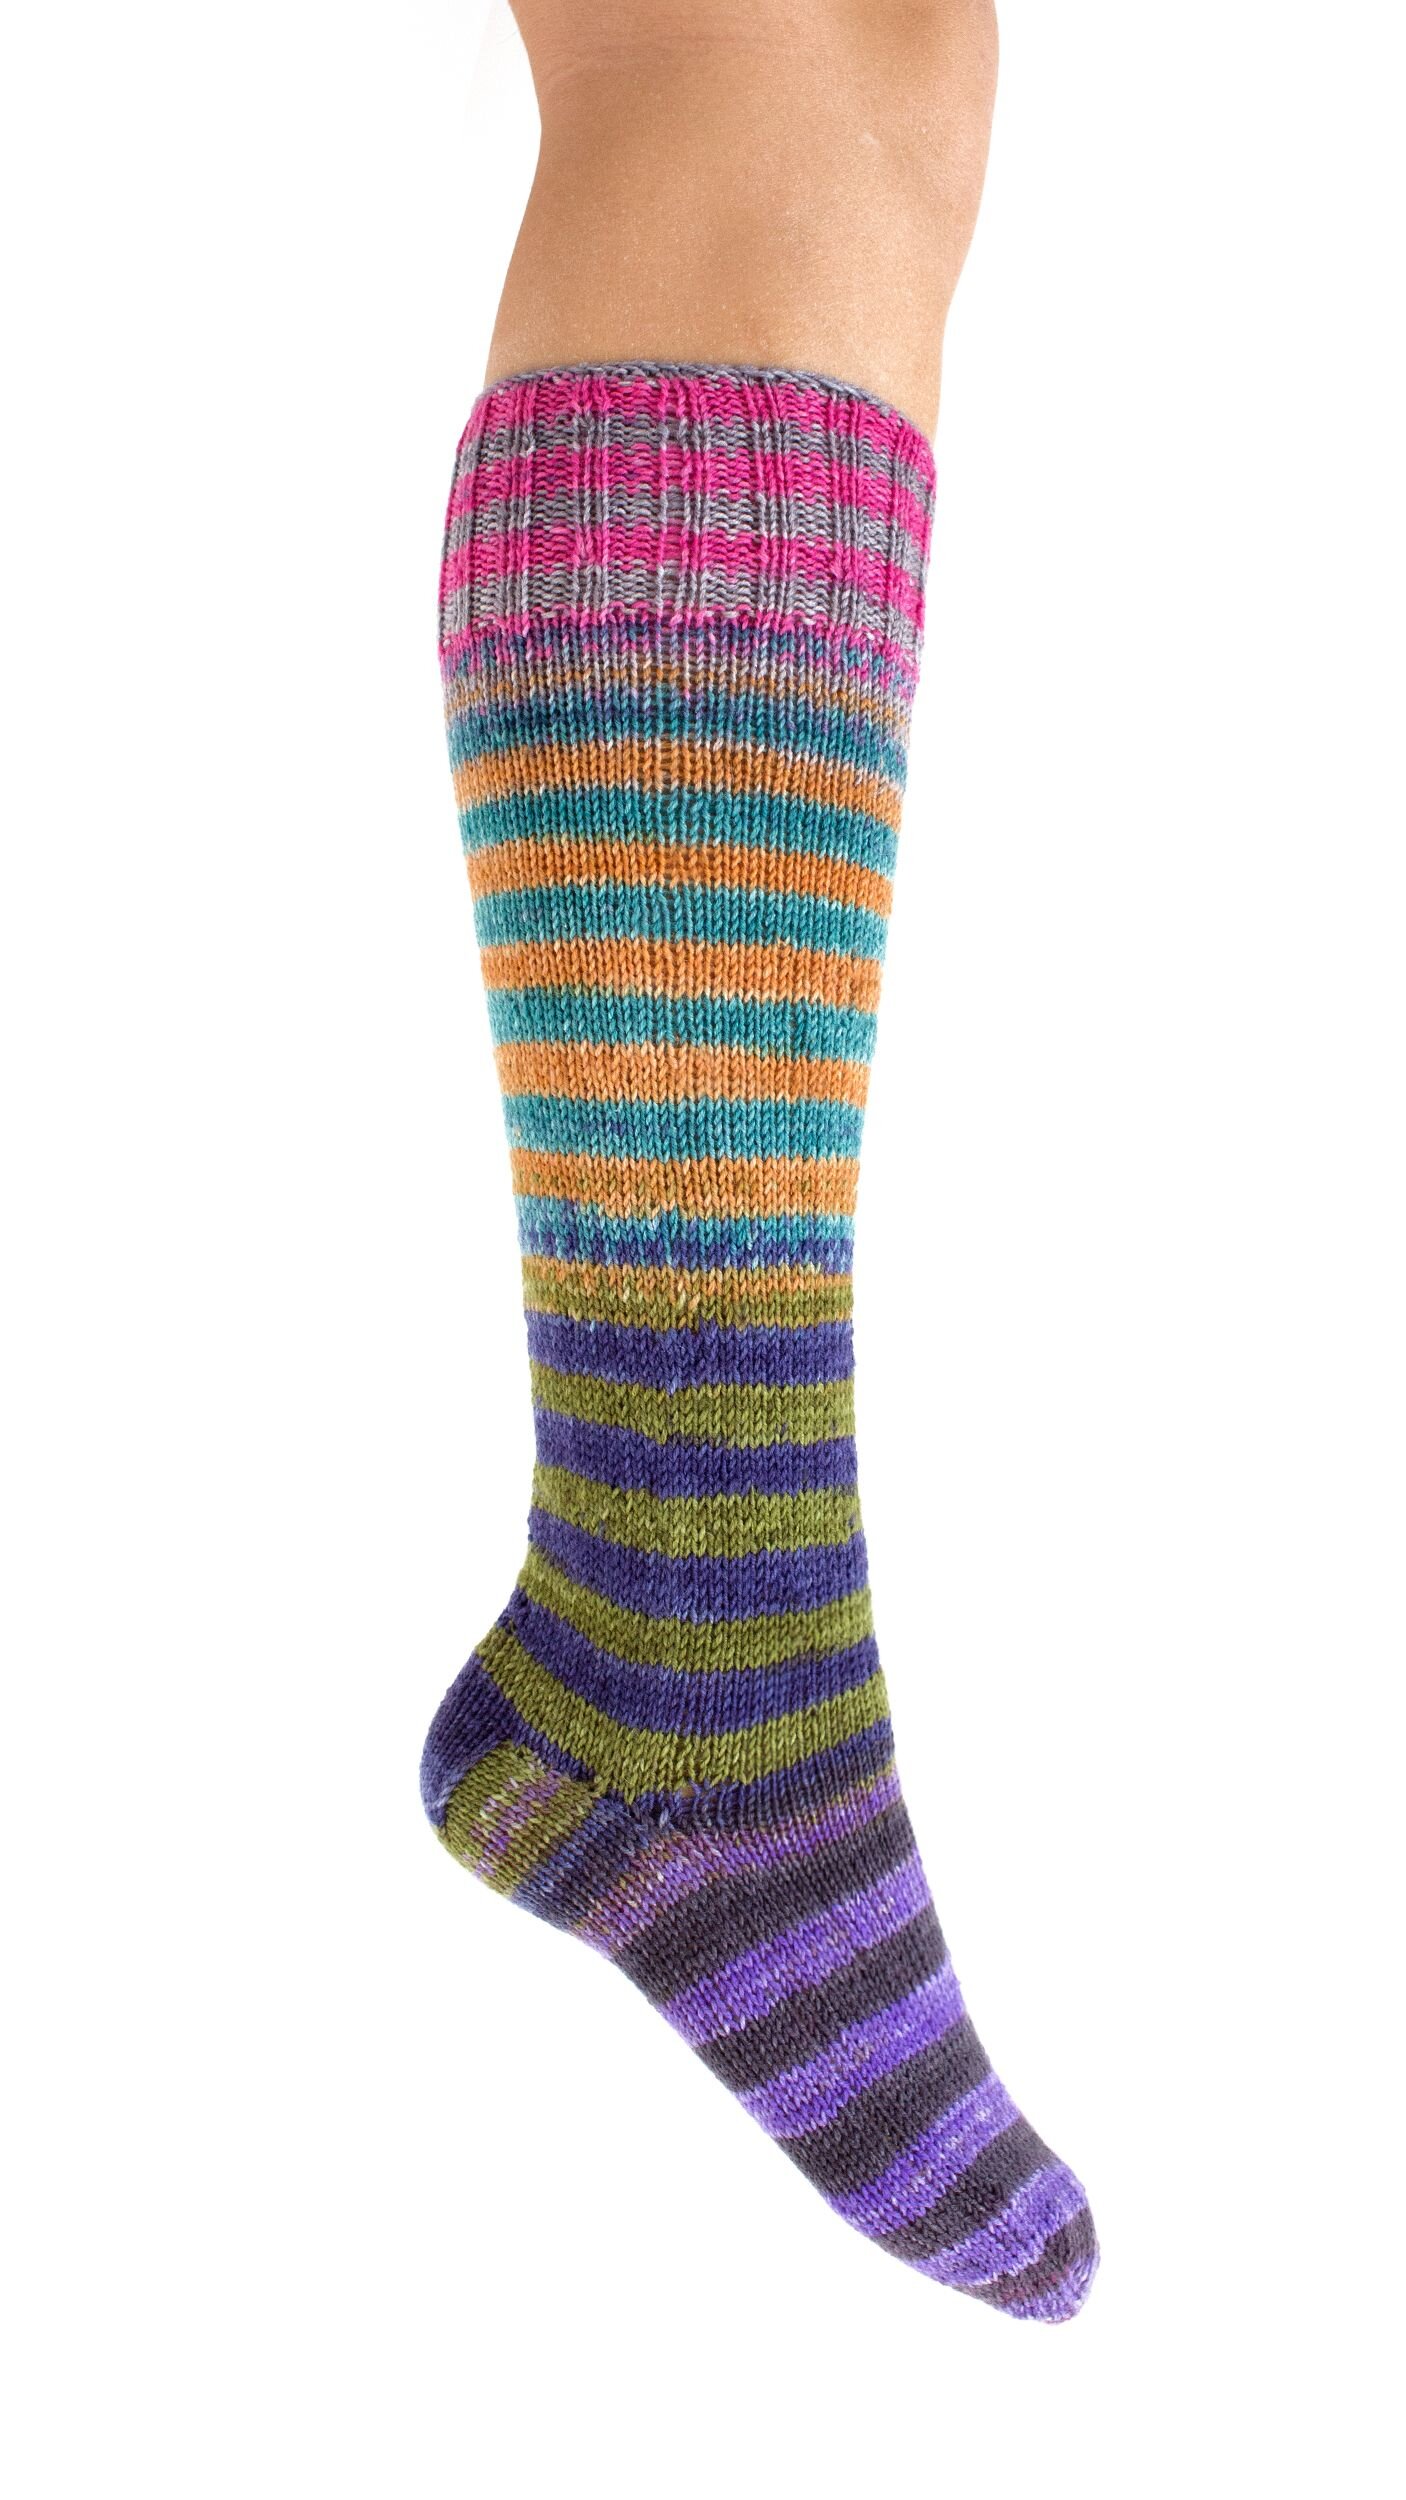 Uneek Self-striping Sock Kit $25.00